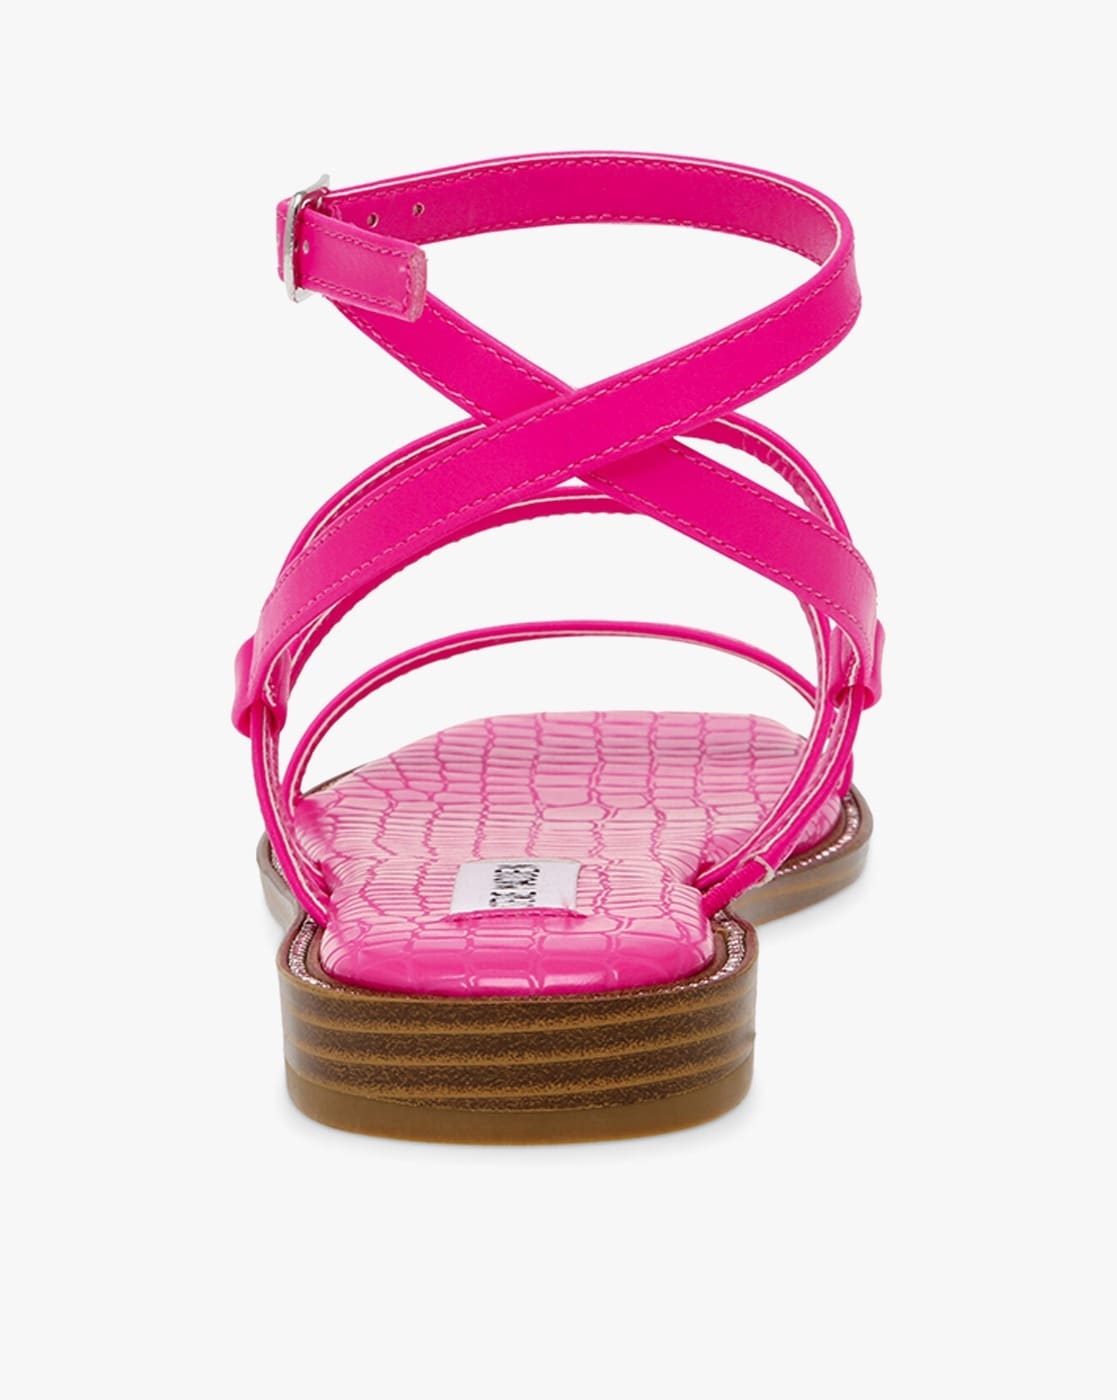 GC SHOES Hot Pink Perri Hot Pink Flat Sandals | Verishop